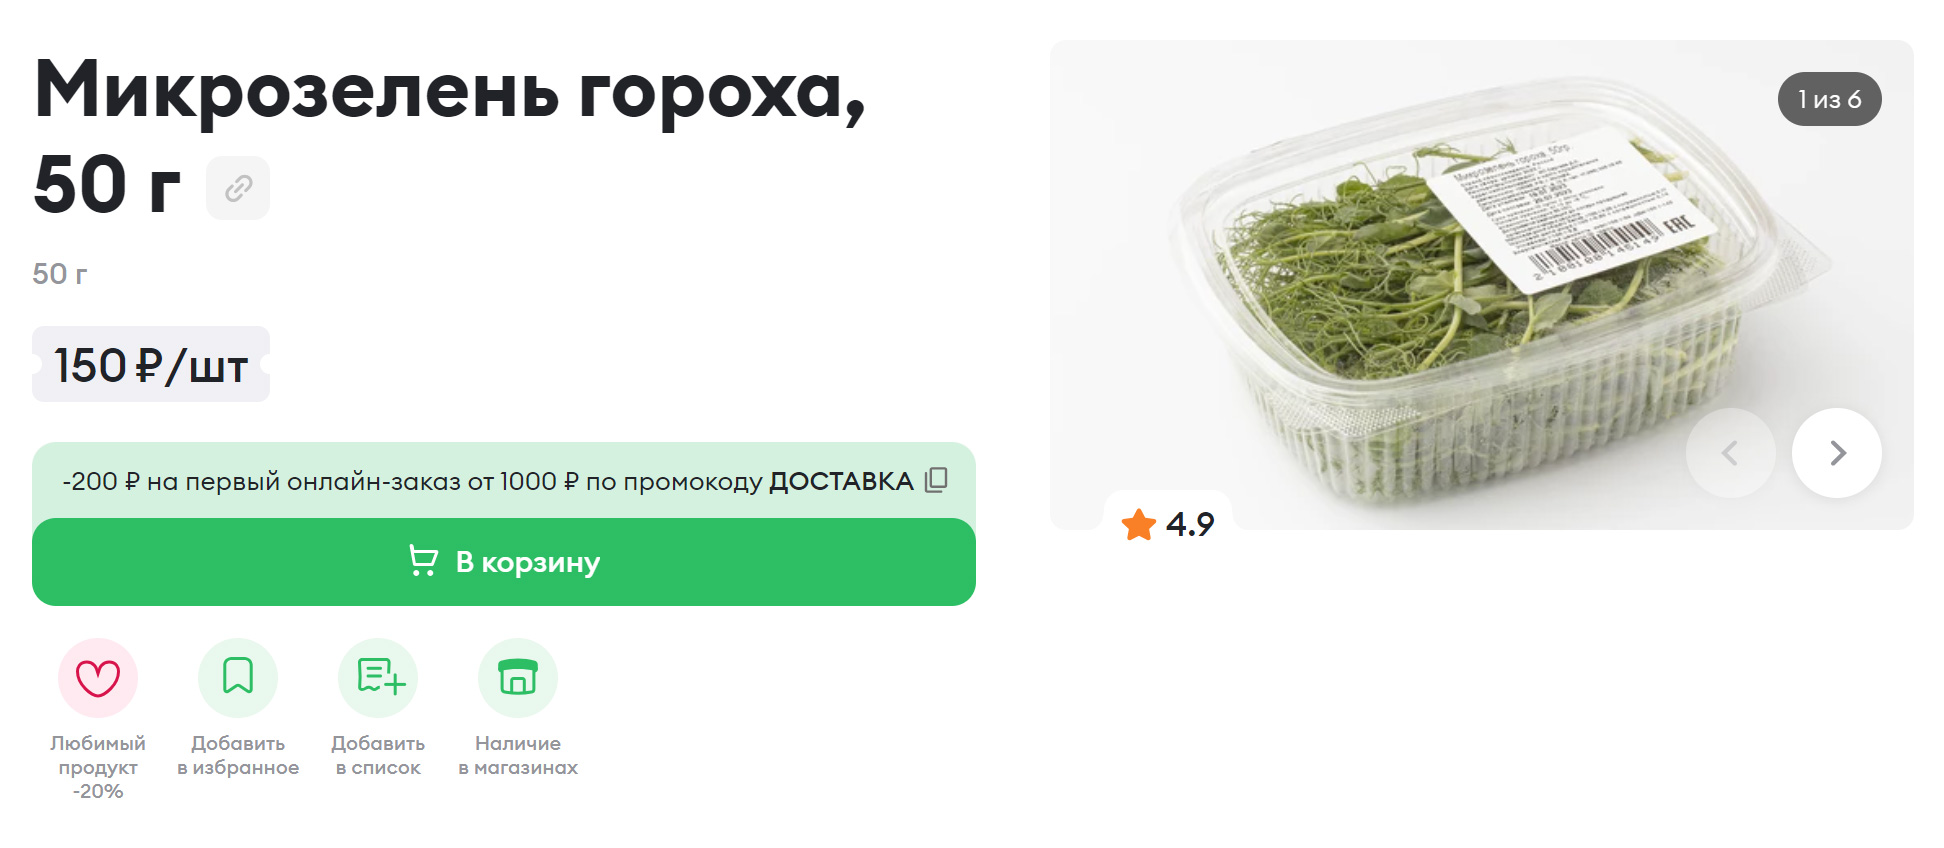 Микрозелень гороха — самый распространенный из вариантов. Она продается круглый год. Источник: vkusvill.ru